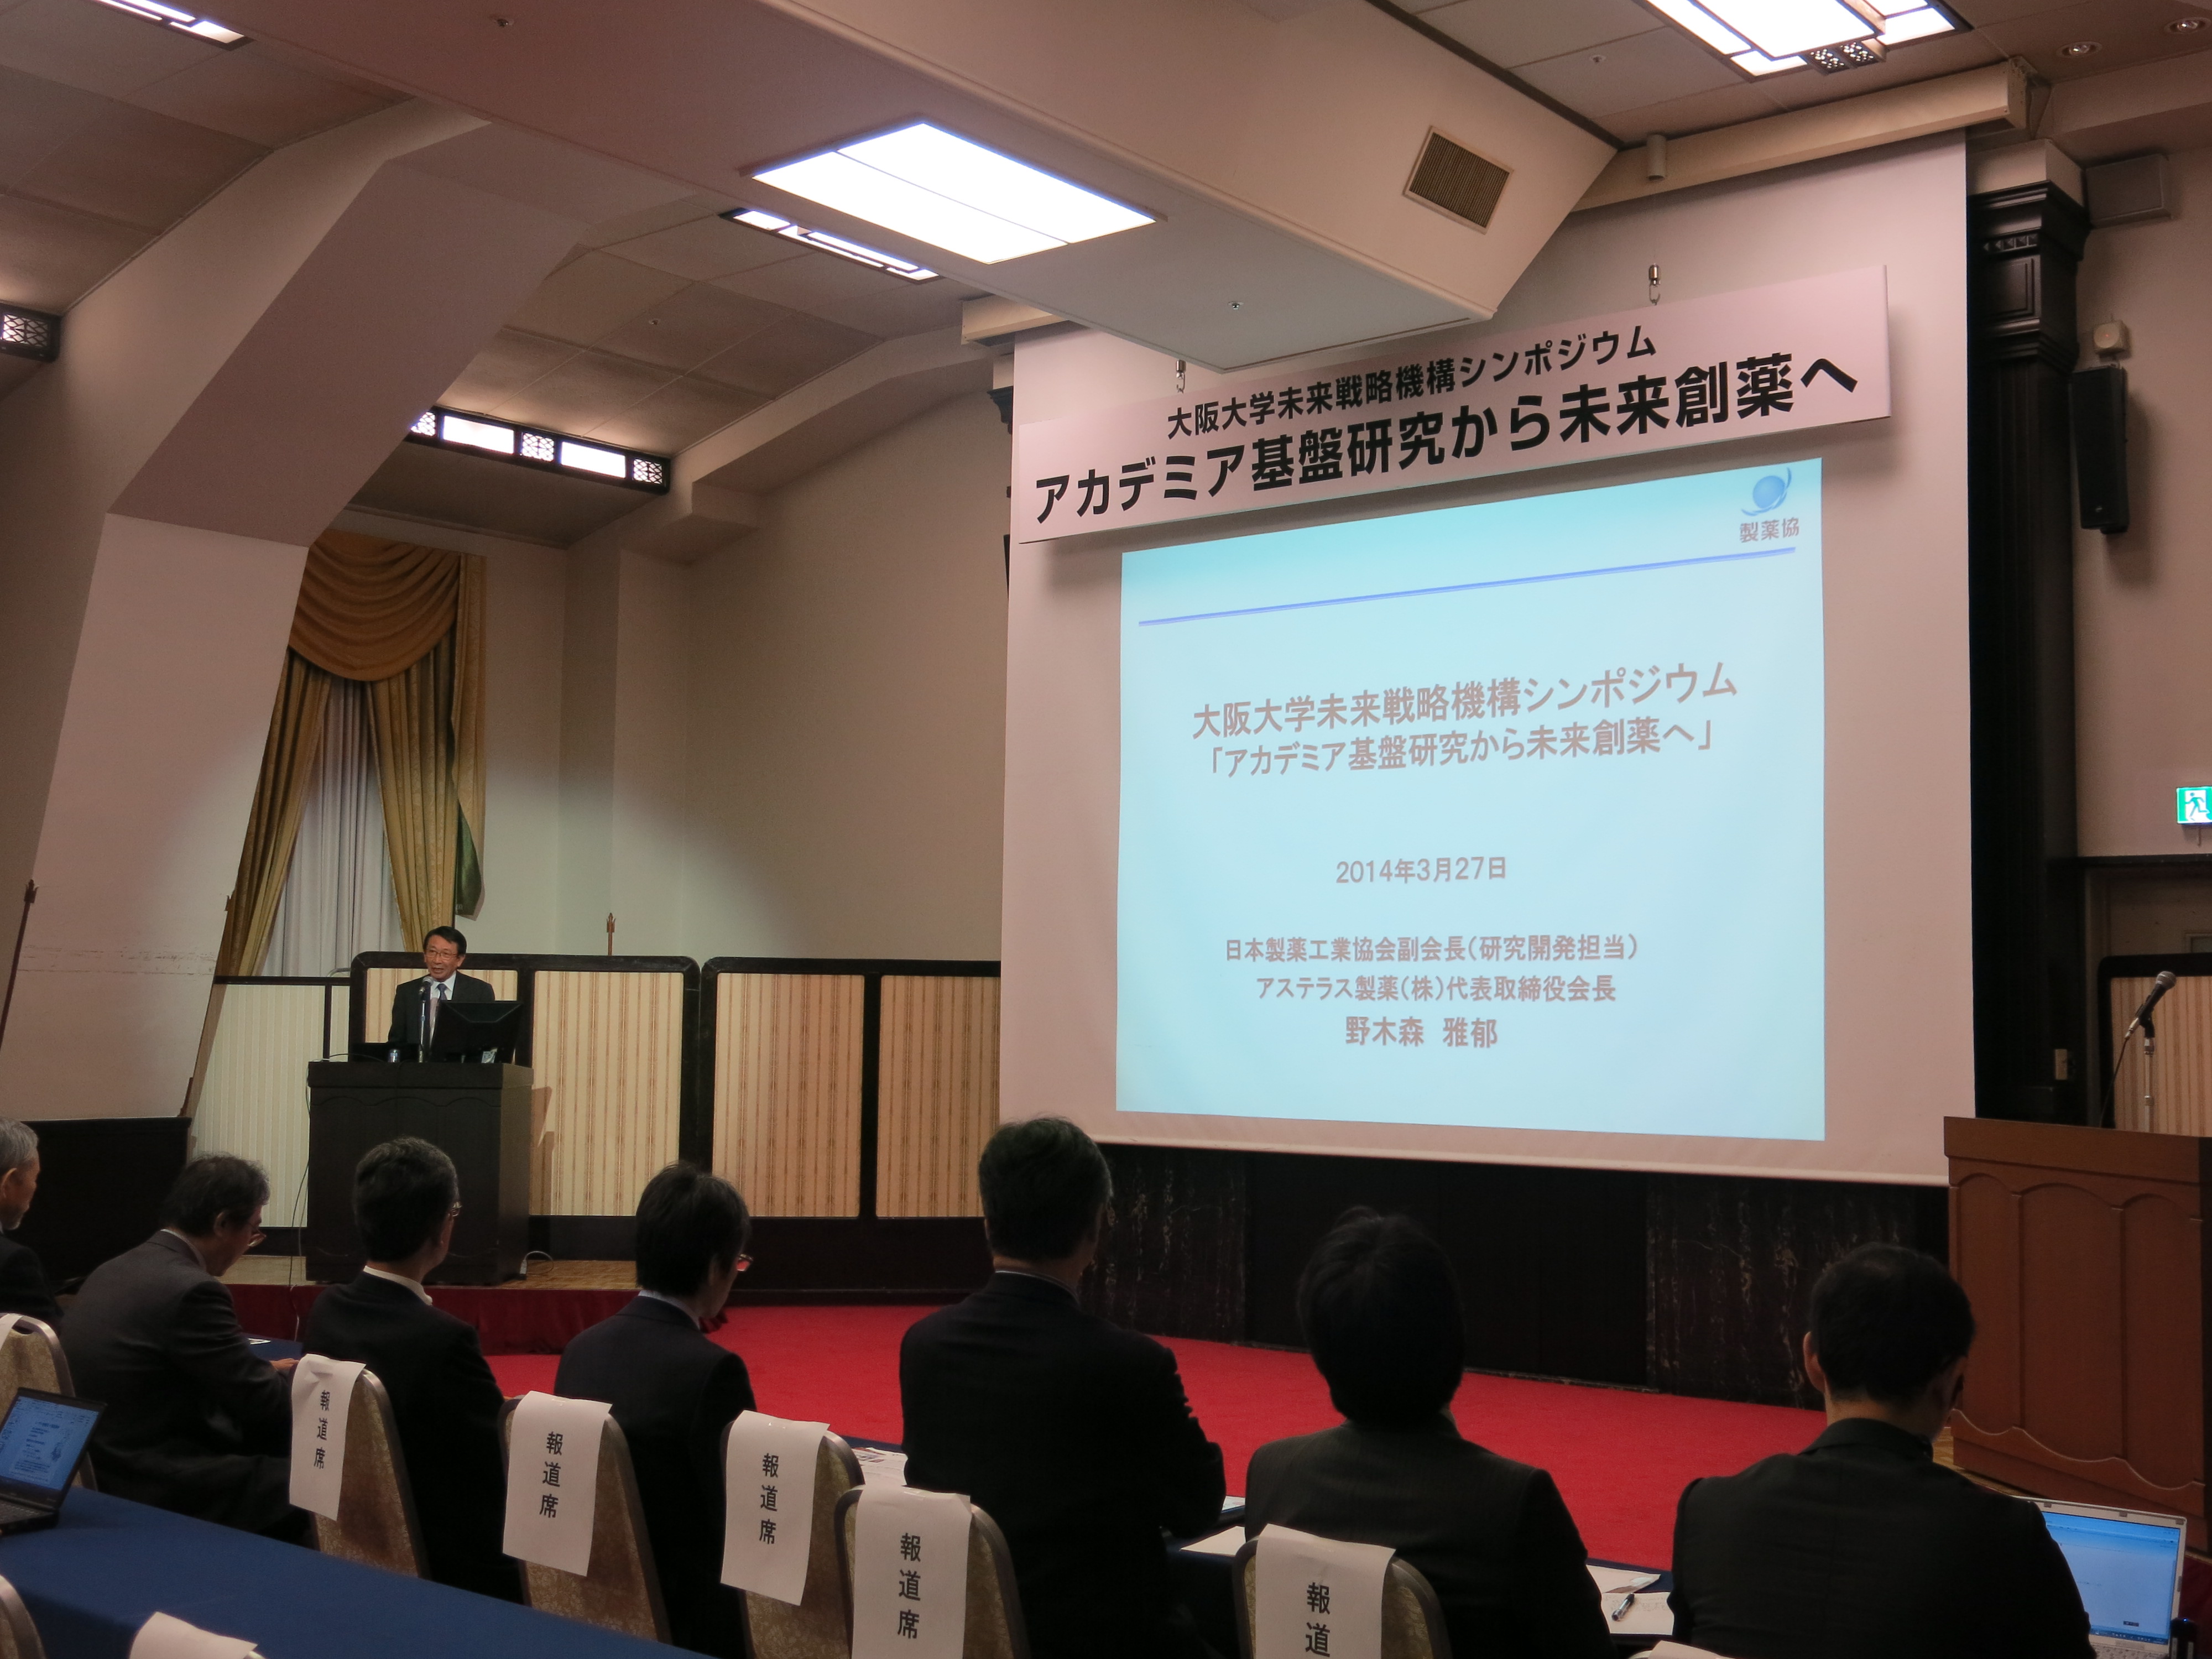 大阪大学未来戦略機構シンポジウム「アカデミア基盤研究から未来創薬へ」を開催しました